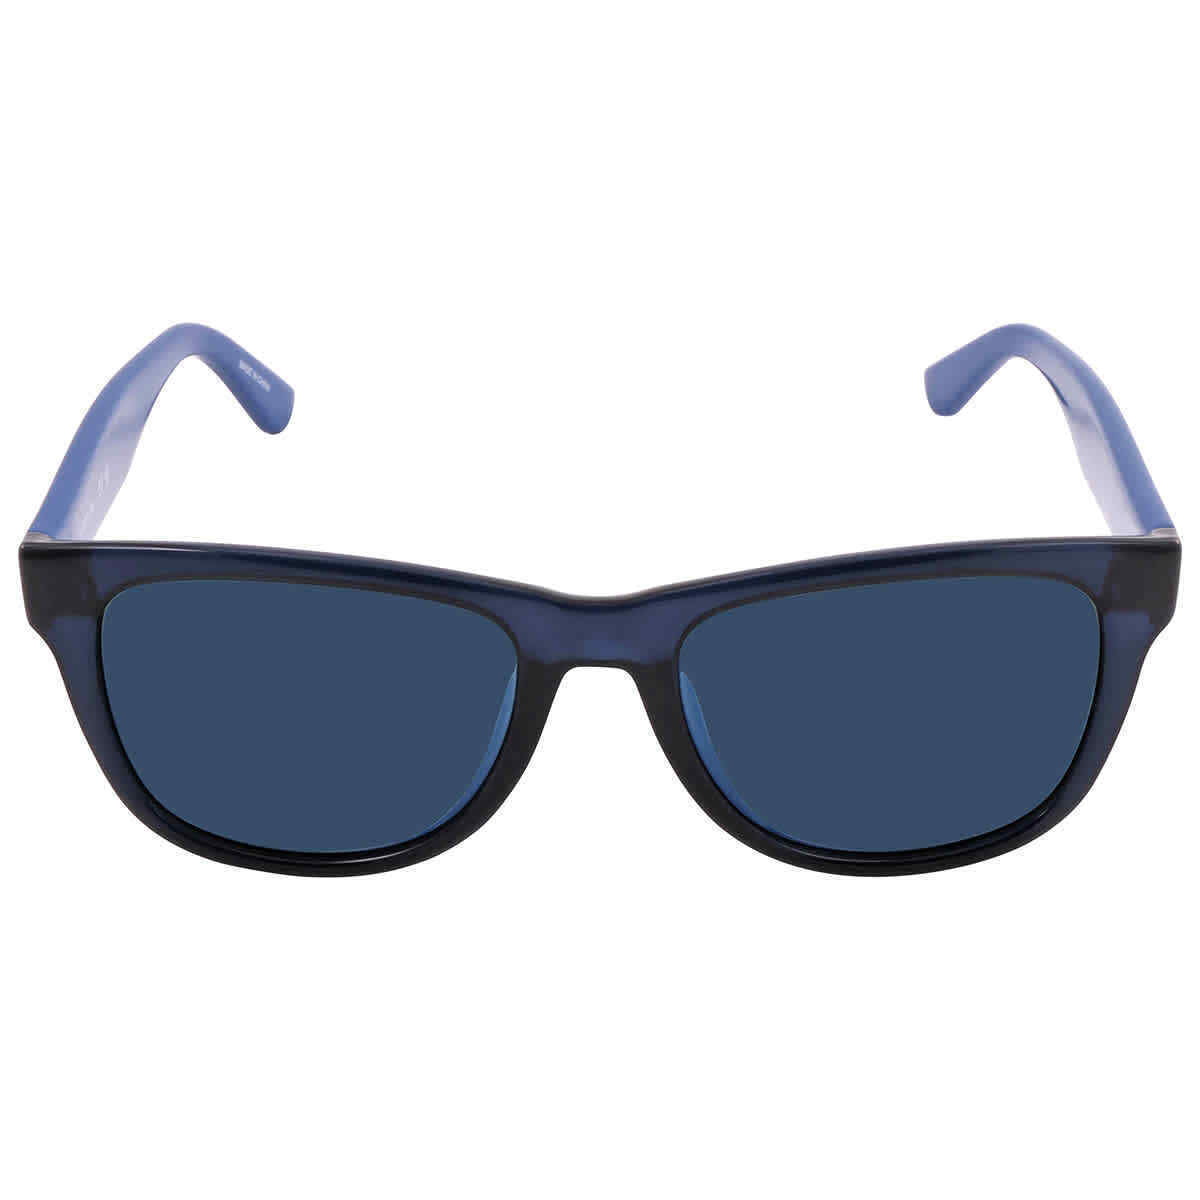 Lacoste L734S-424-5218 52mm New Sunglasses